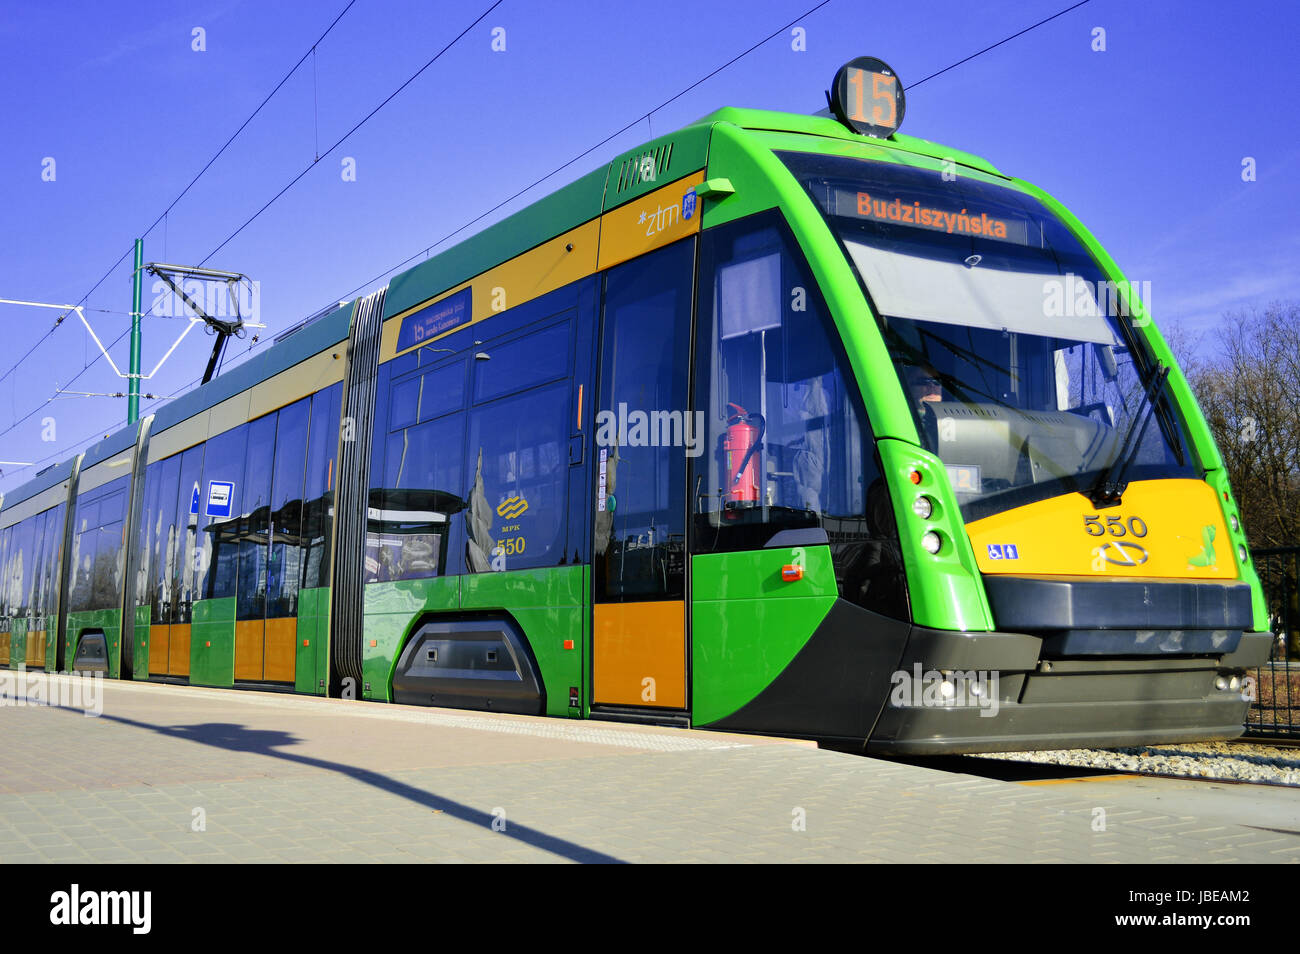 Introduite en 2010 streetcar Tramino est un produit de Solaris Bus & Coach, autobus, autocar, trolleybus et tramways fabricant basé à Bolechowo près de Poznan, Pologne Banque D'Images